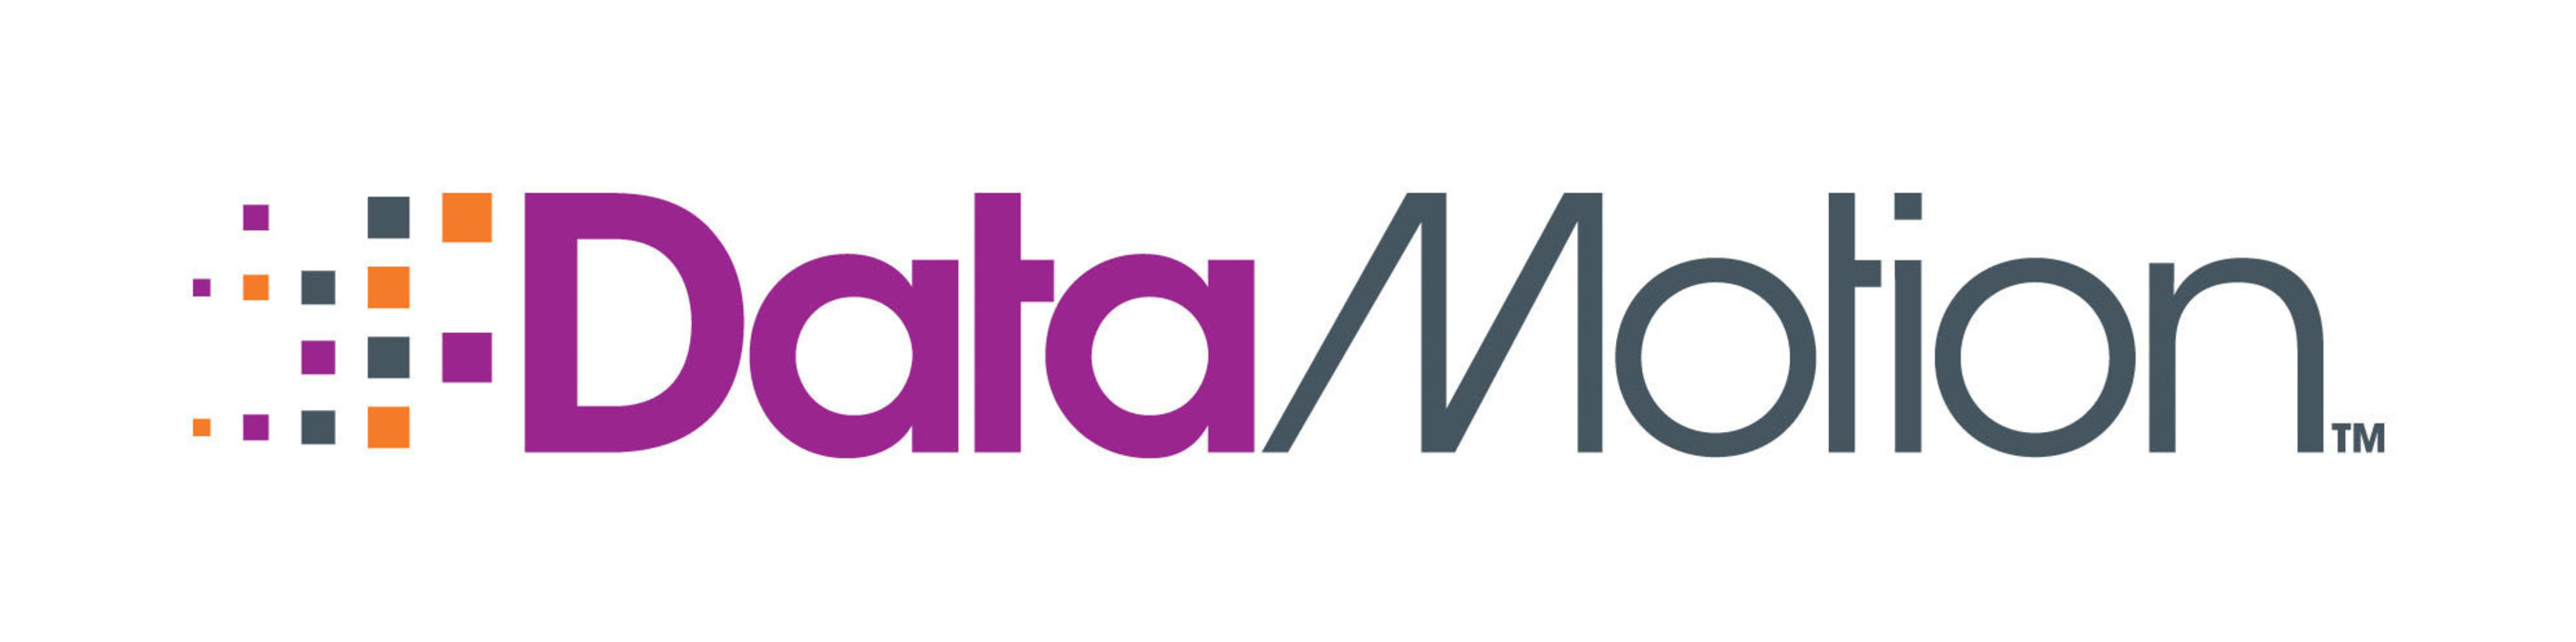 DataMotion Logo.